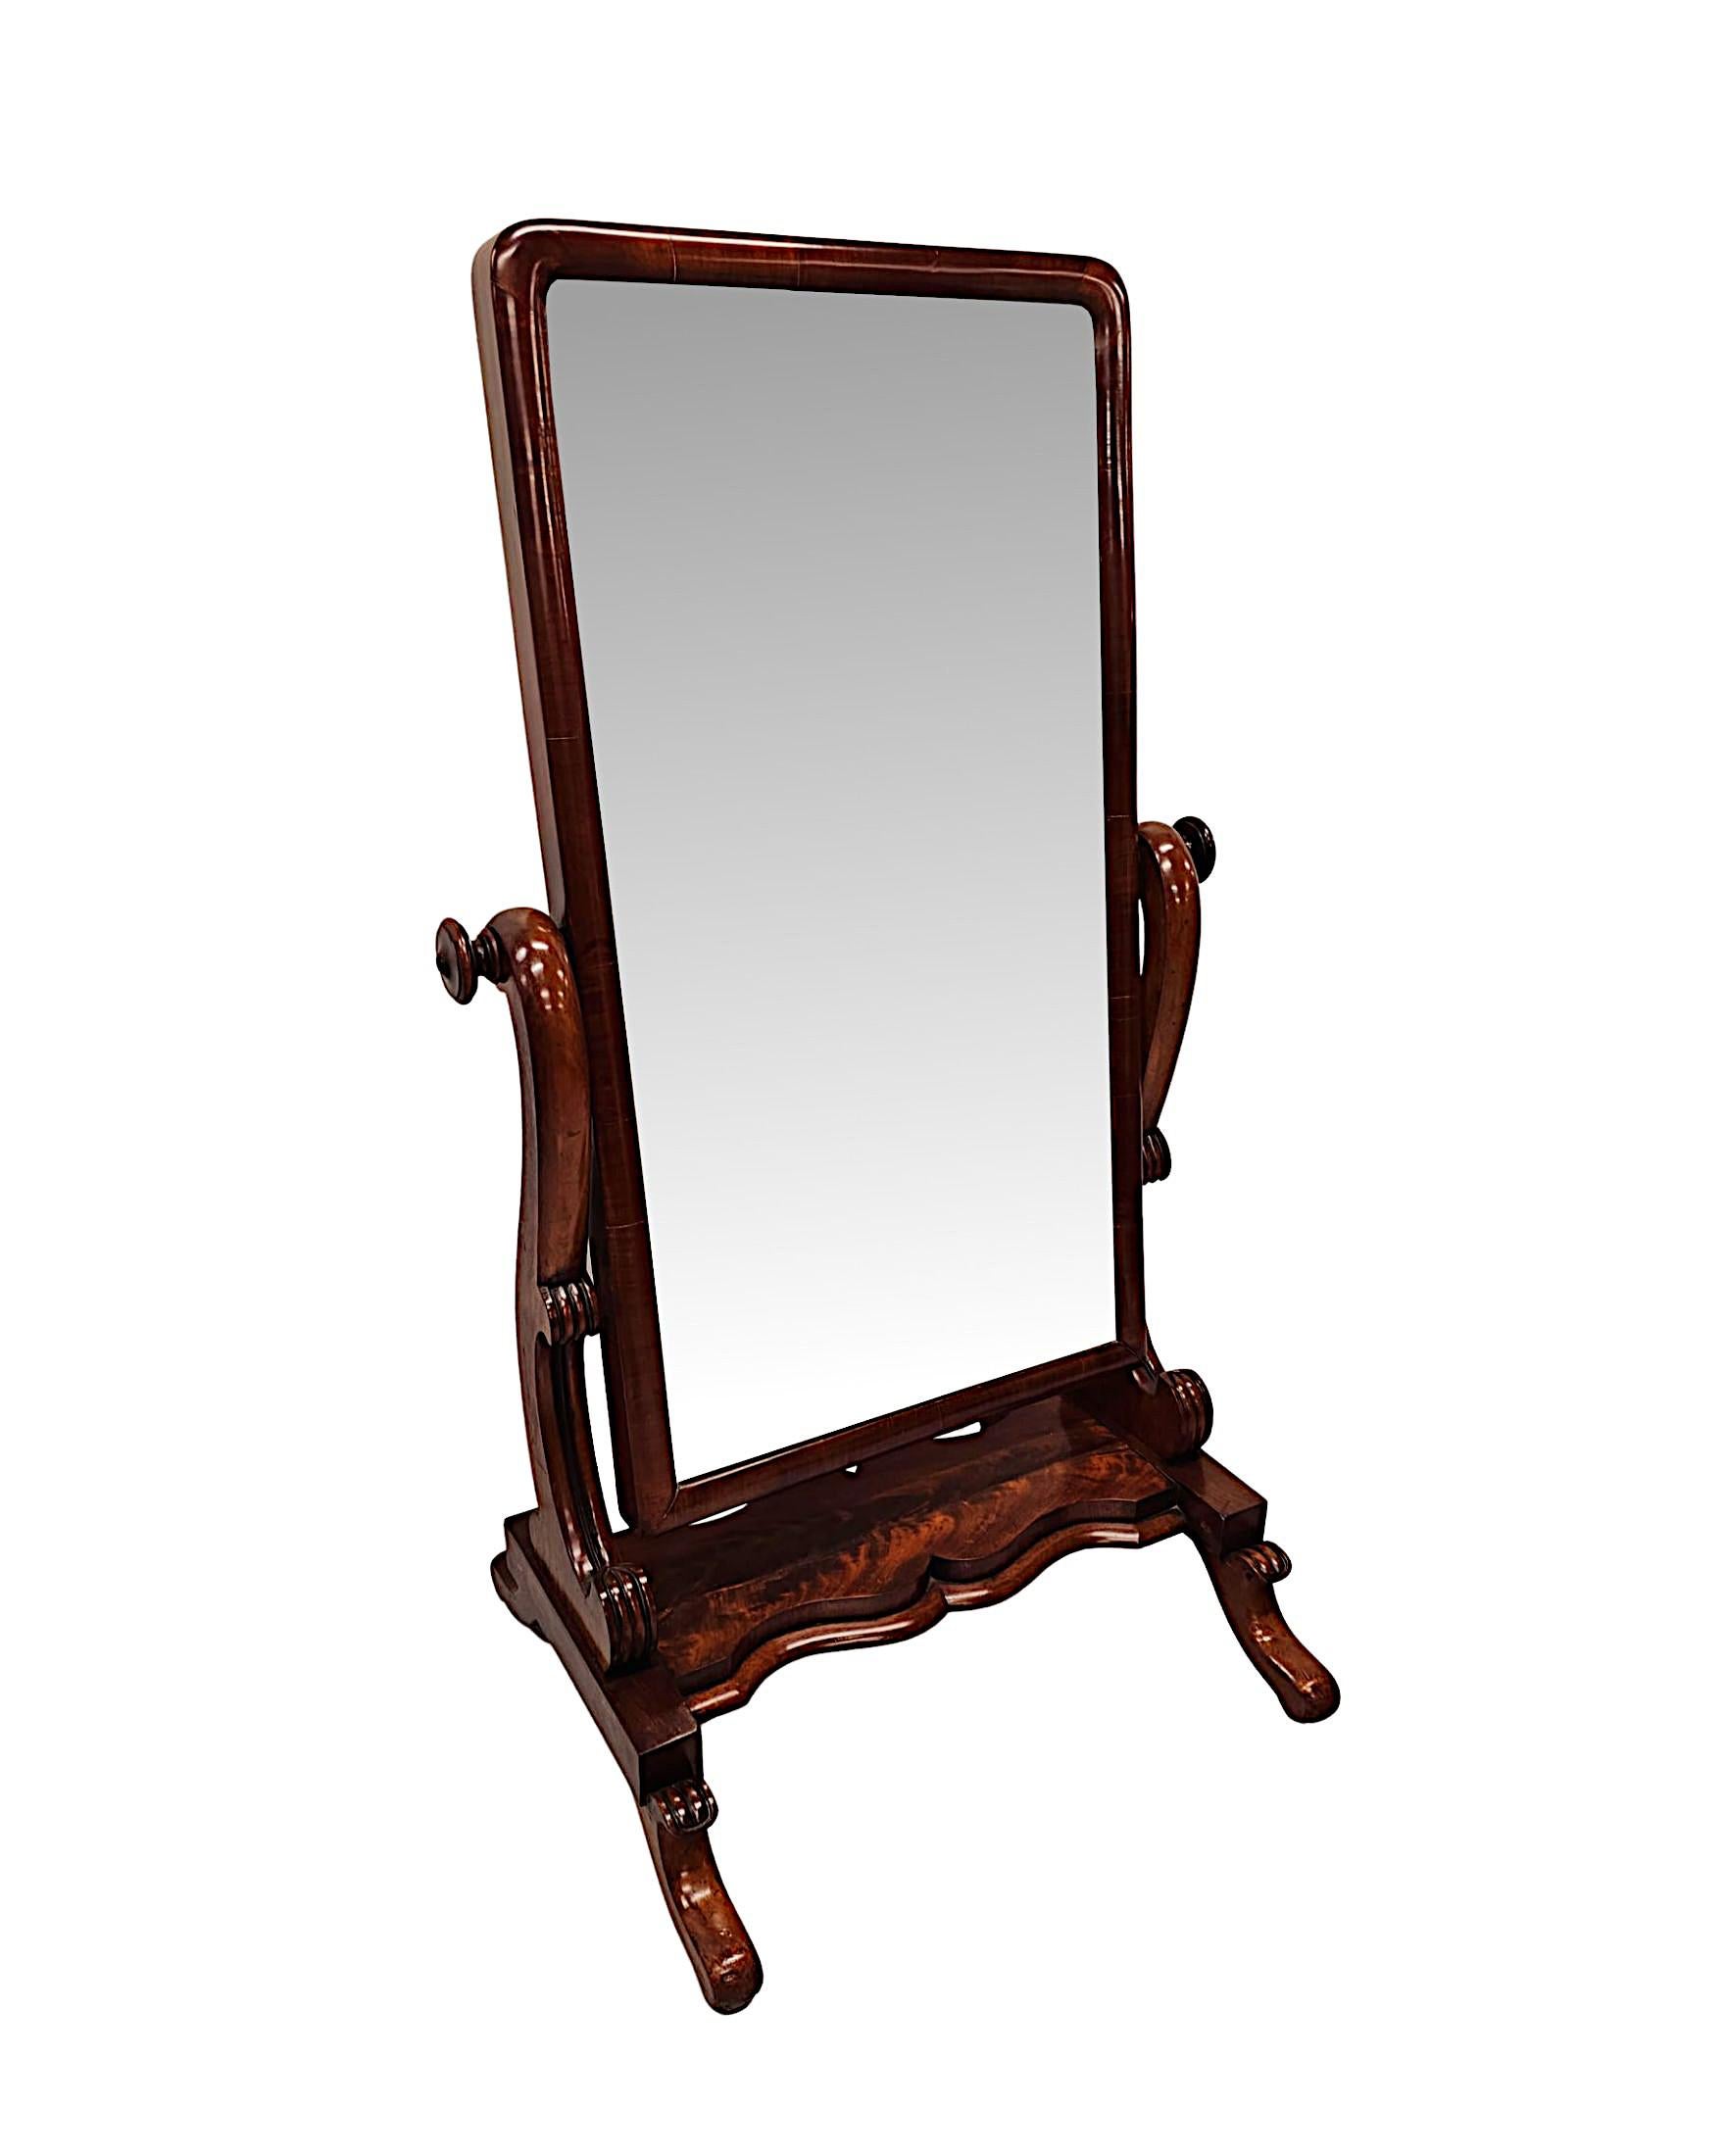 Eine sehr feine 19. Jahrhundert Flamme Mahagoni Cheval Spiegel fabelhaft handgeschnitzt, von außergewöhnlicher Qualität mit herrlich reiche Patina und Maserung.  Die abgeschrägte Spiegelglasplatte von rechteckiger Form ist in einen fein gemaserten